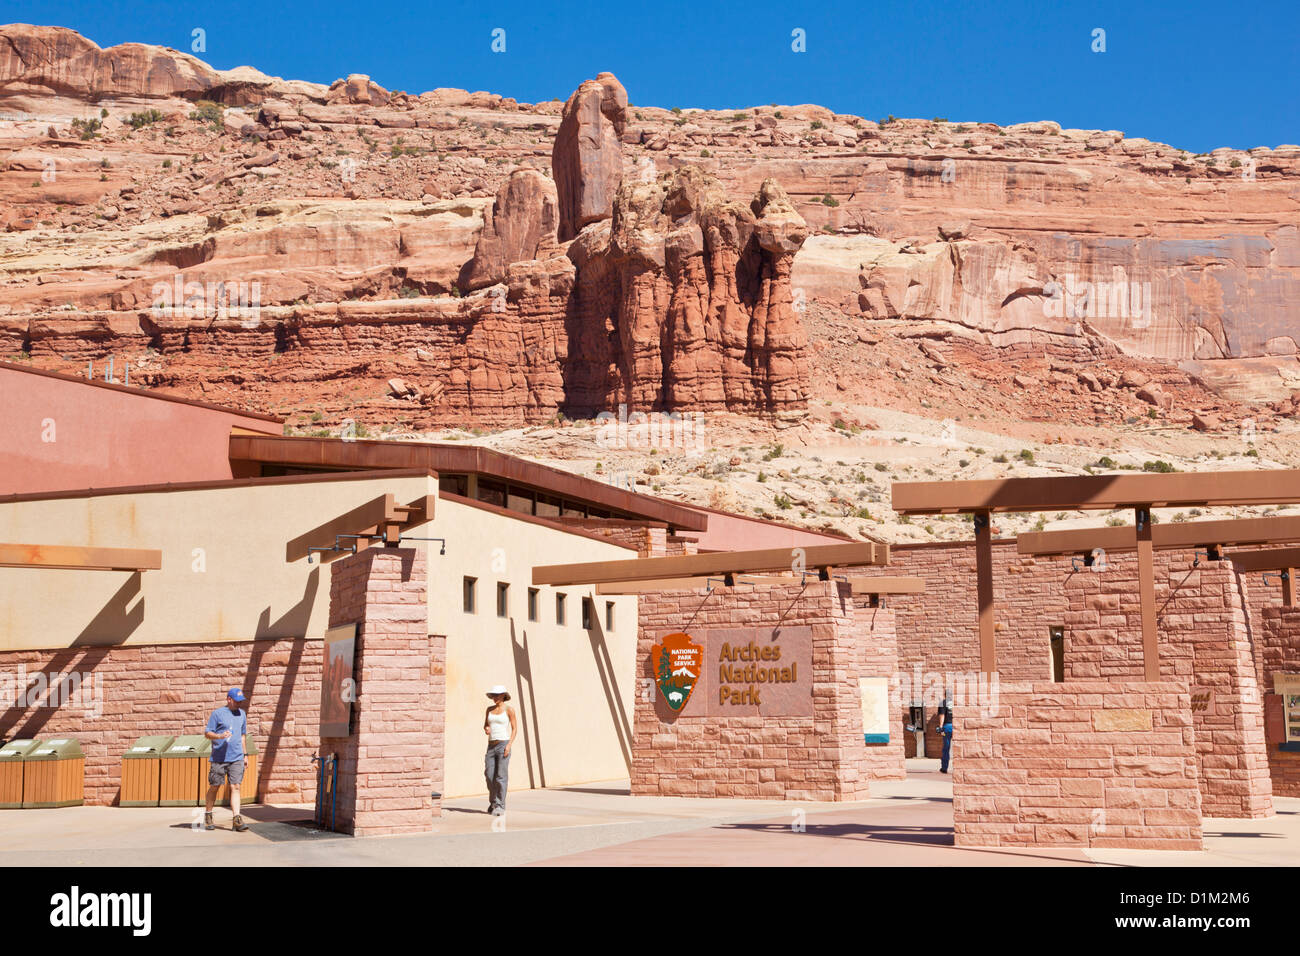 Arches National Park Visitor Center Zentrum Moab Utah USA Vereinigte Staaten von Amerika Stockfoto